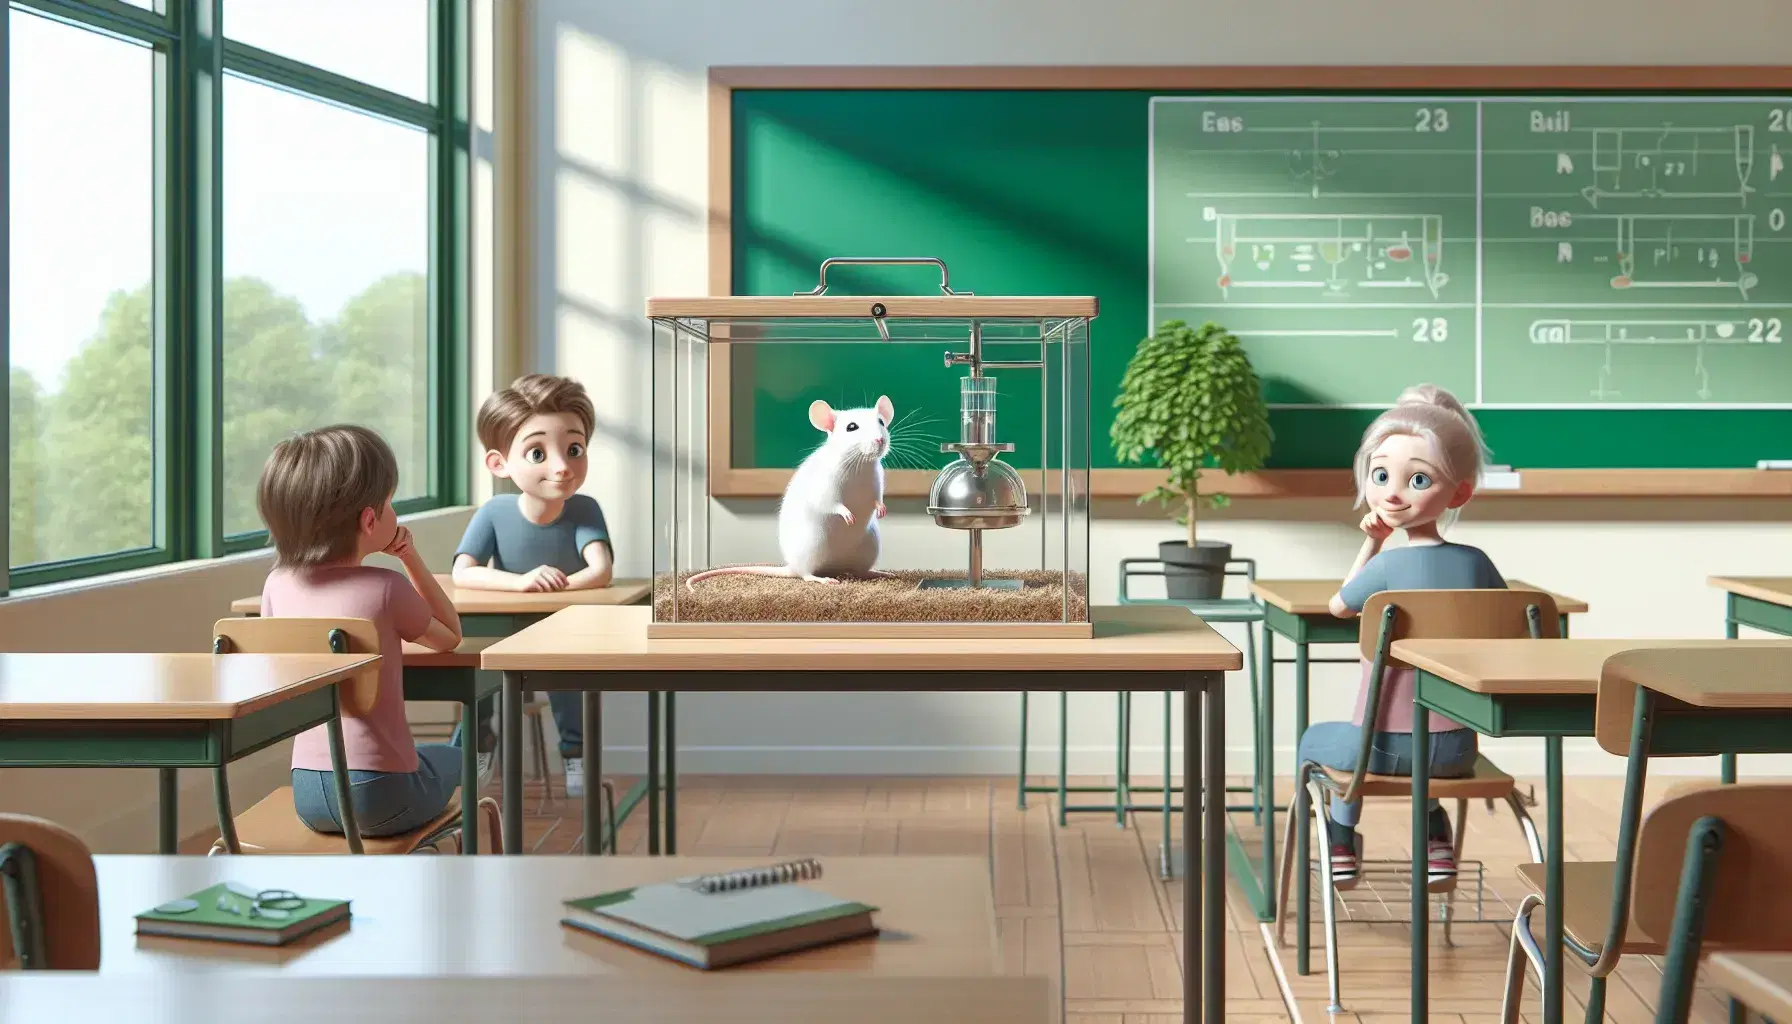 Rata blanca en caja de vidrio con palanca y dispensador de comida en aula, con niño y niña observando atentamente, pizarra verde y planta al fondo.